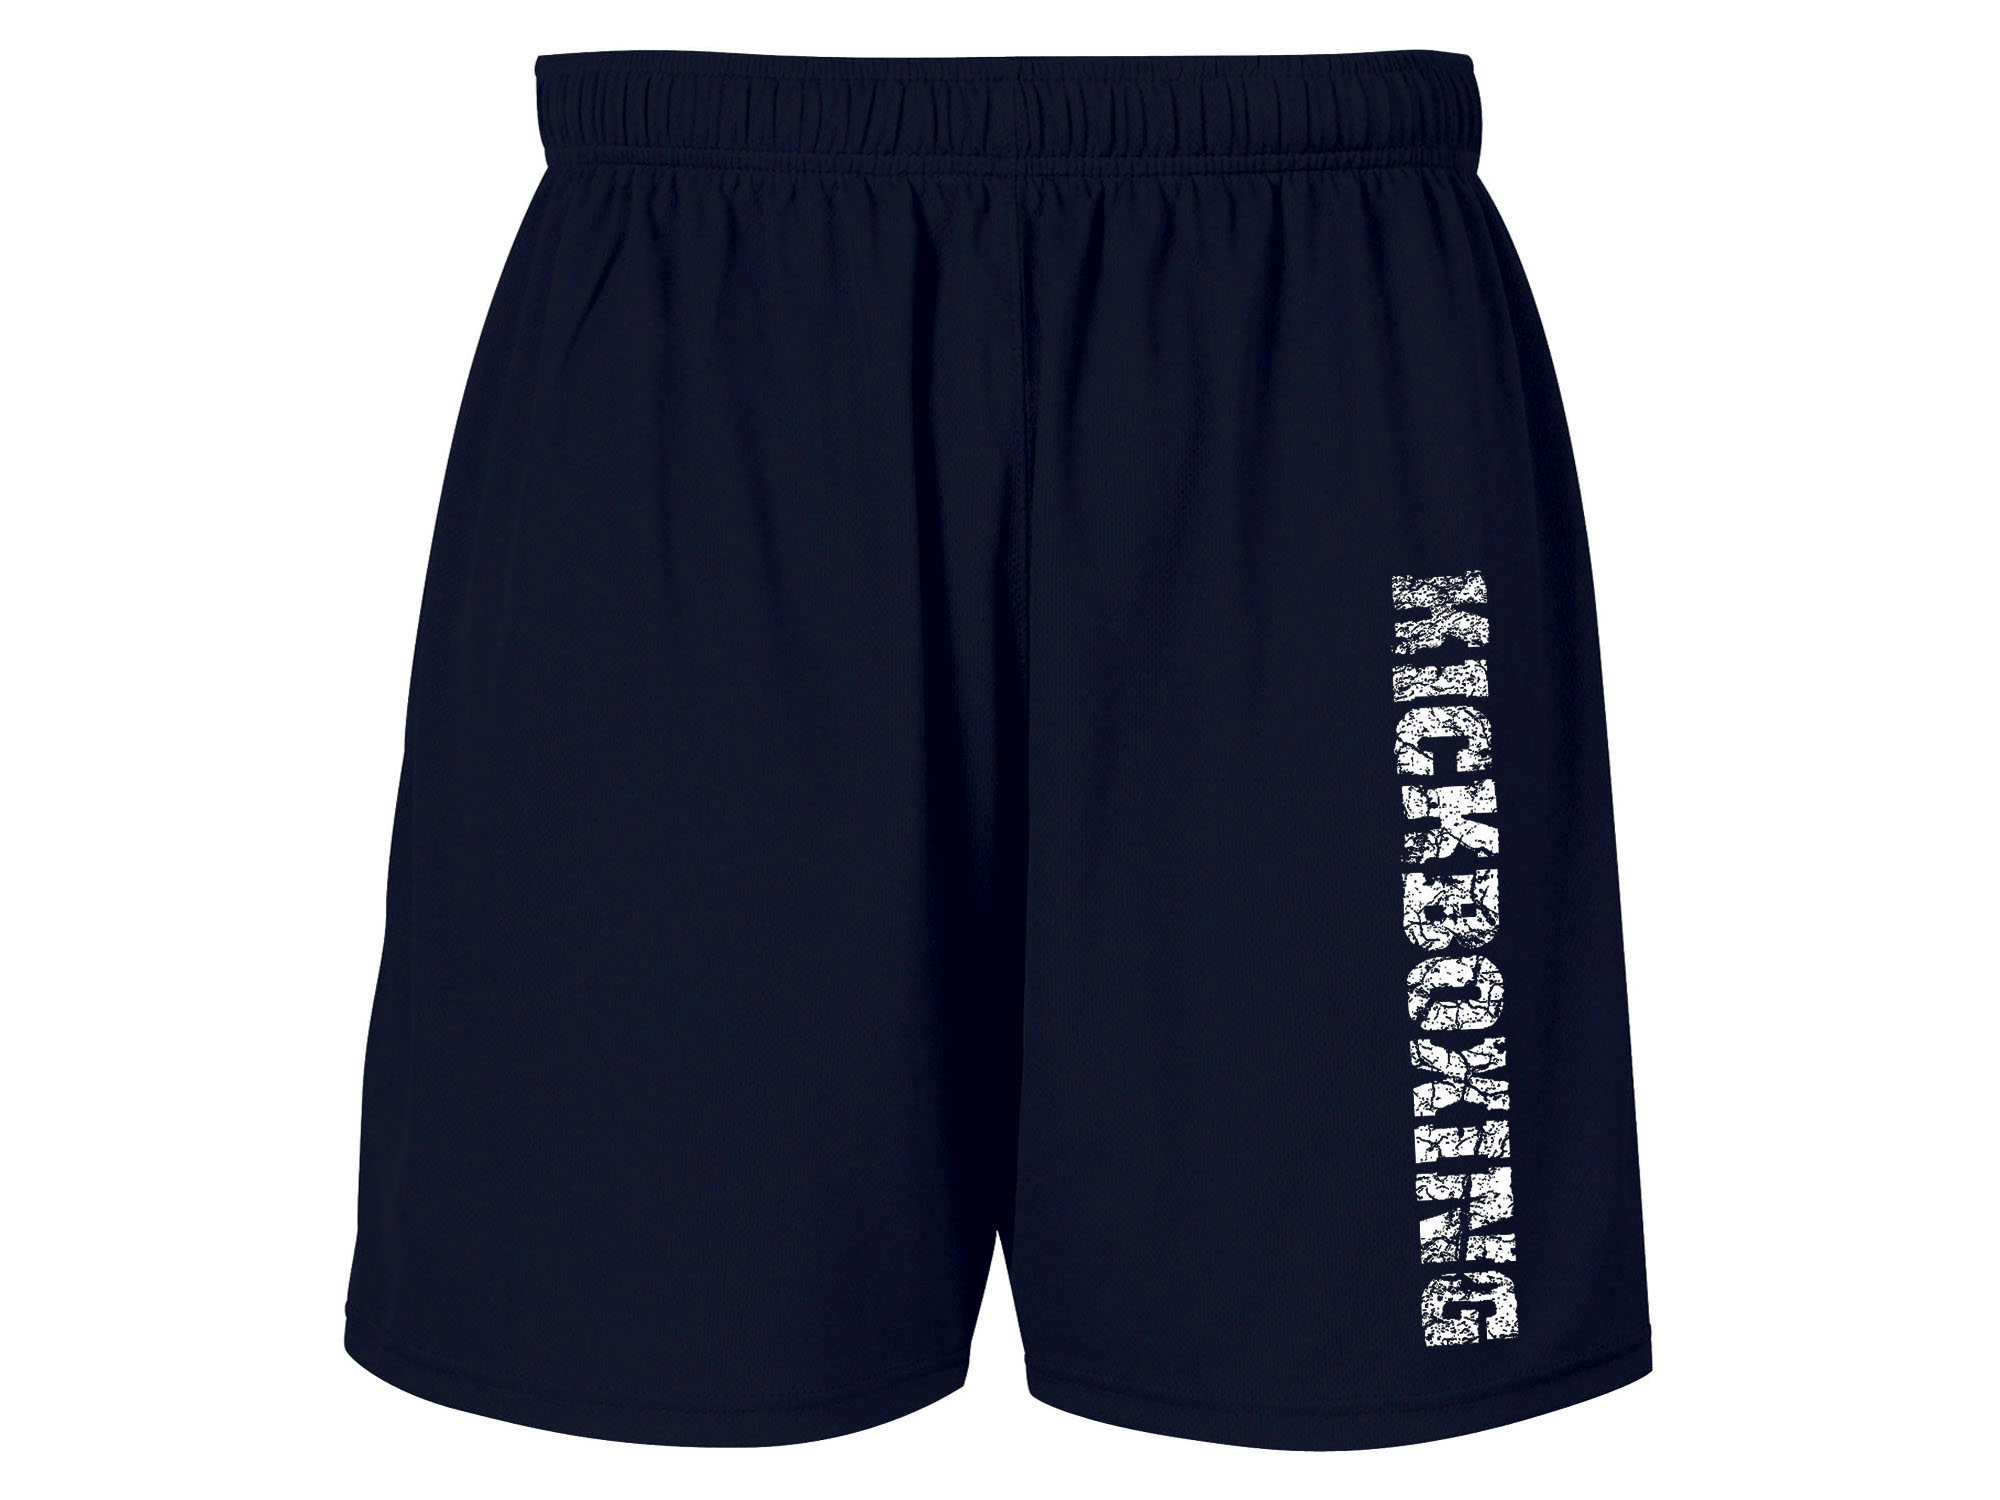 Kickboxing workout sweat proof fabric navy blue shorts XL size